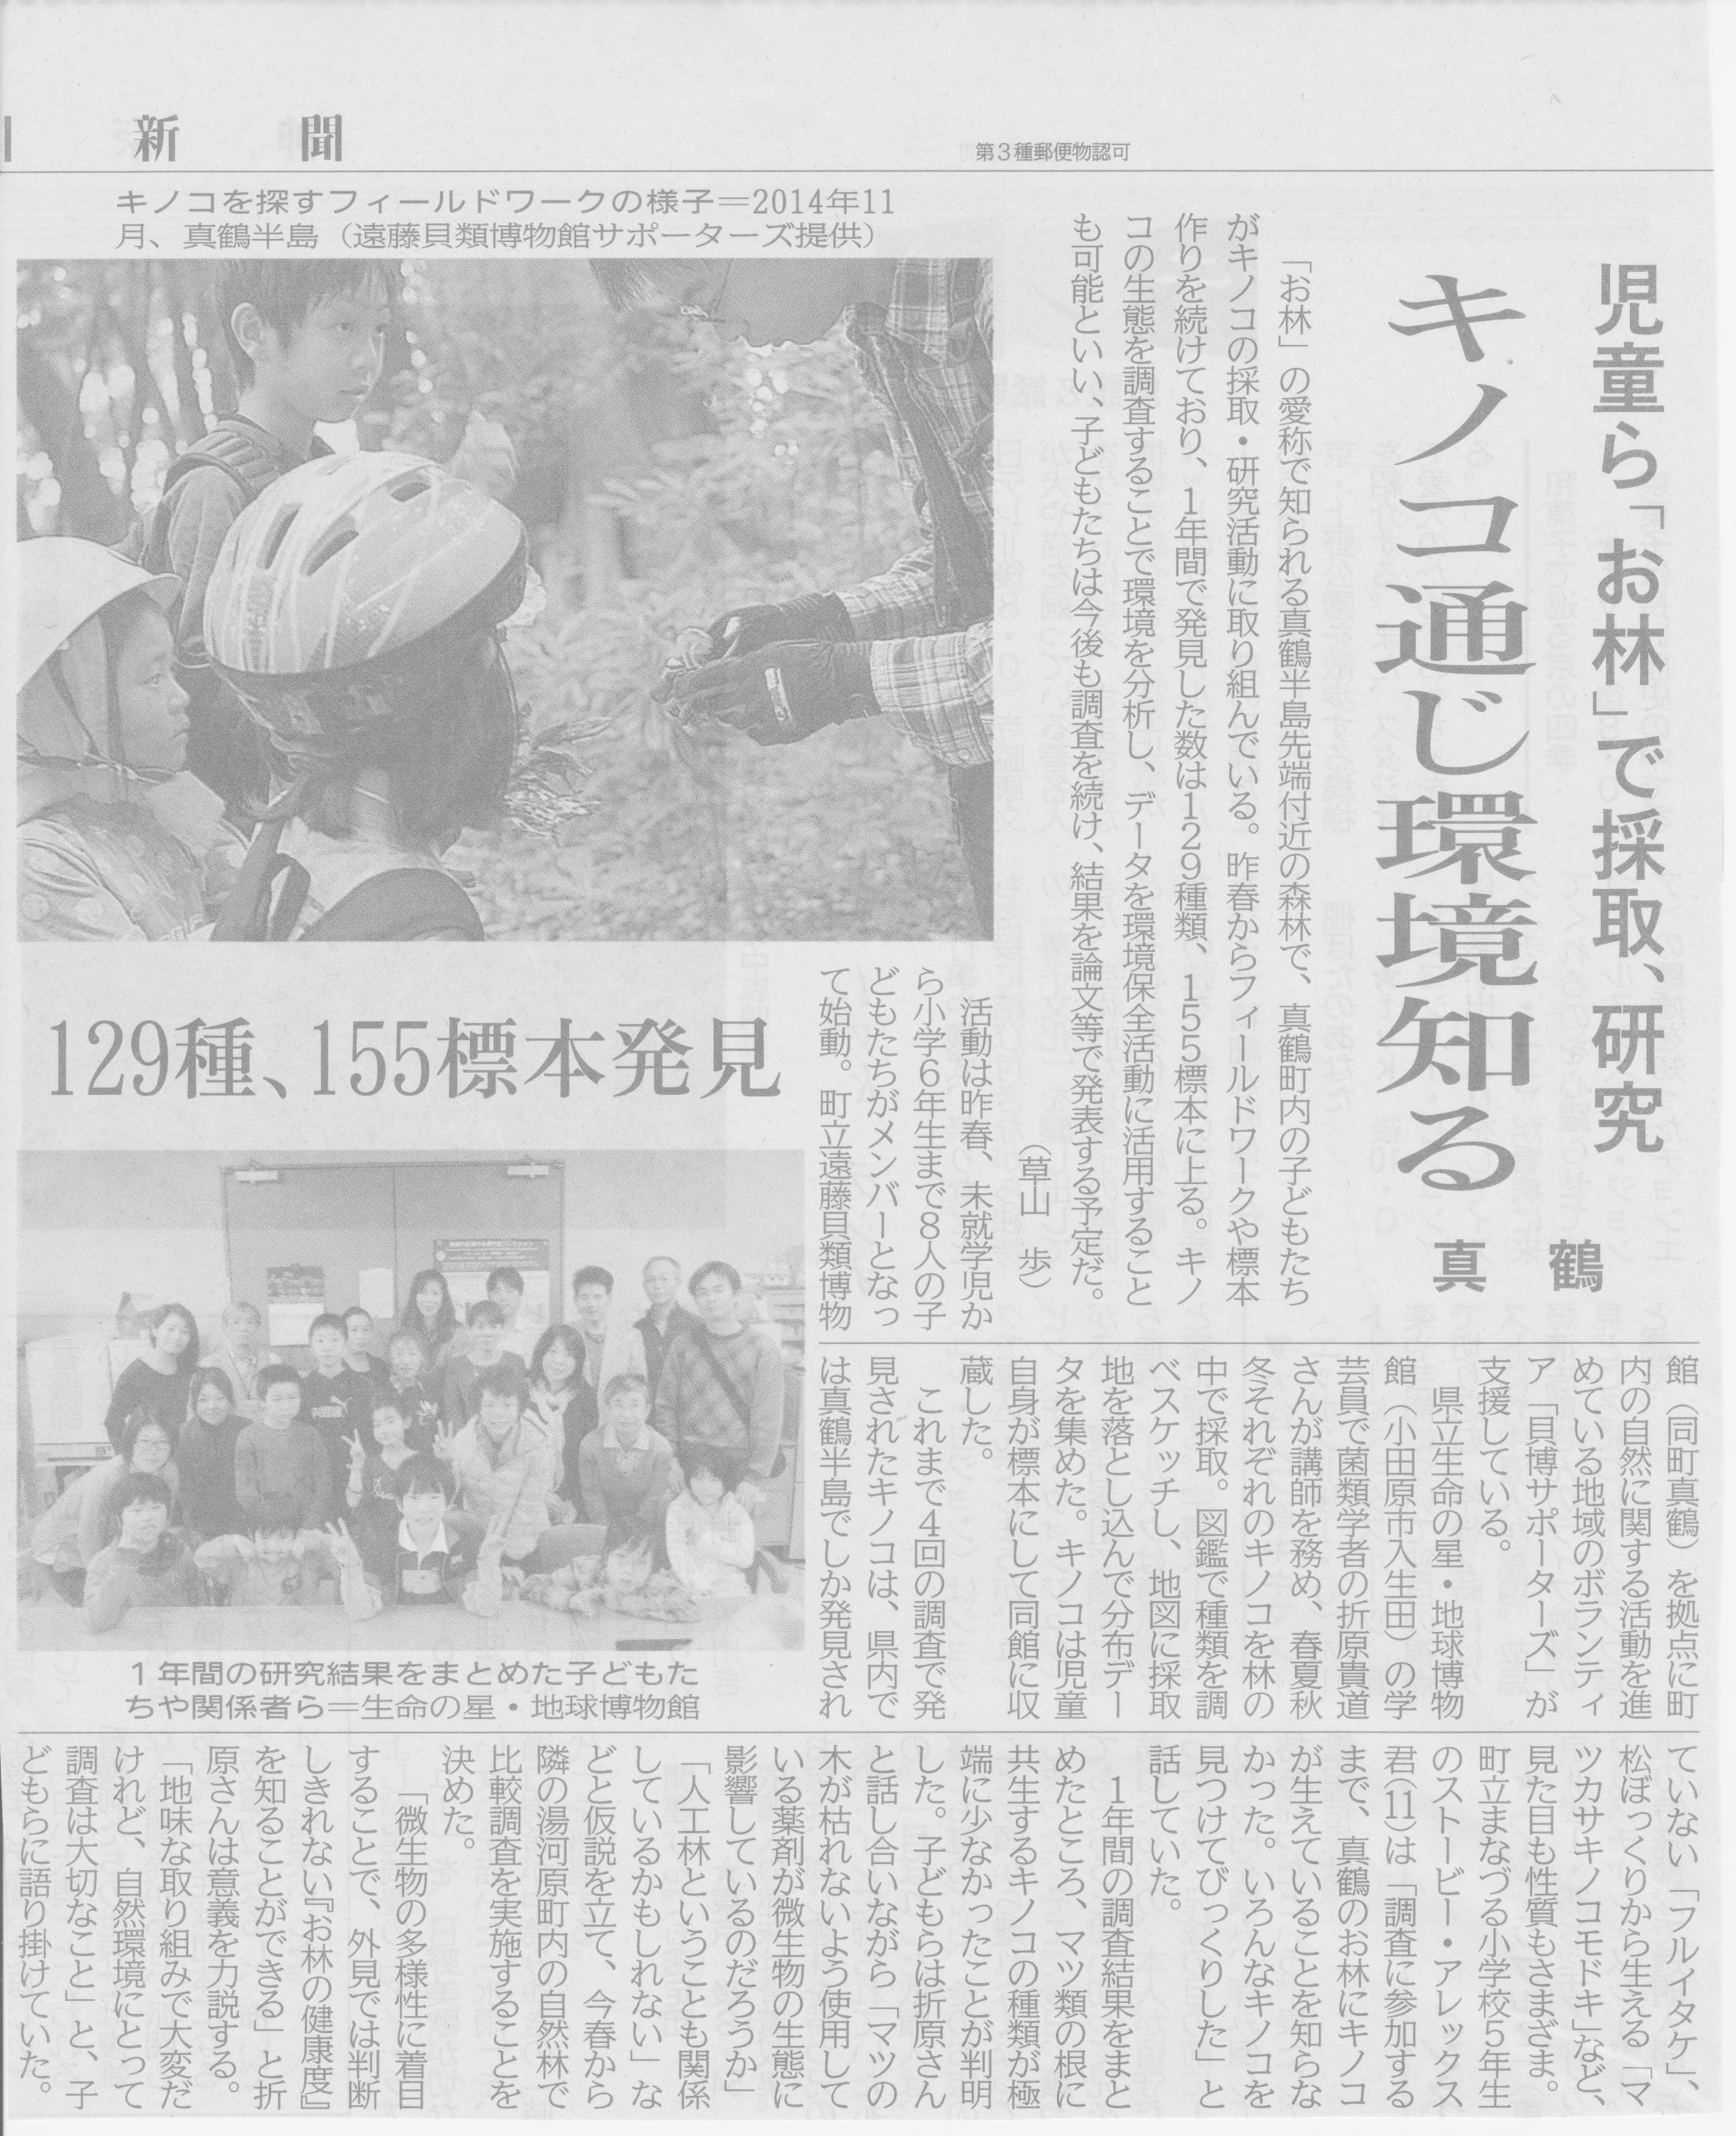 2015.02.10神奈川新聞 湘南版